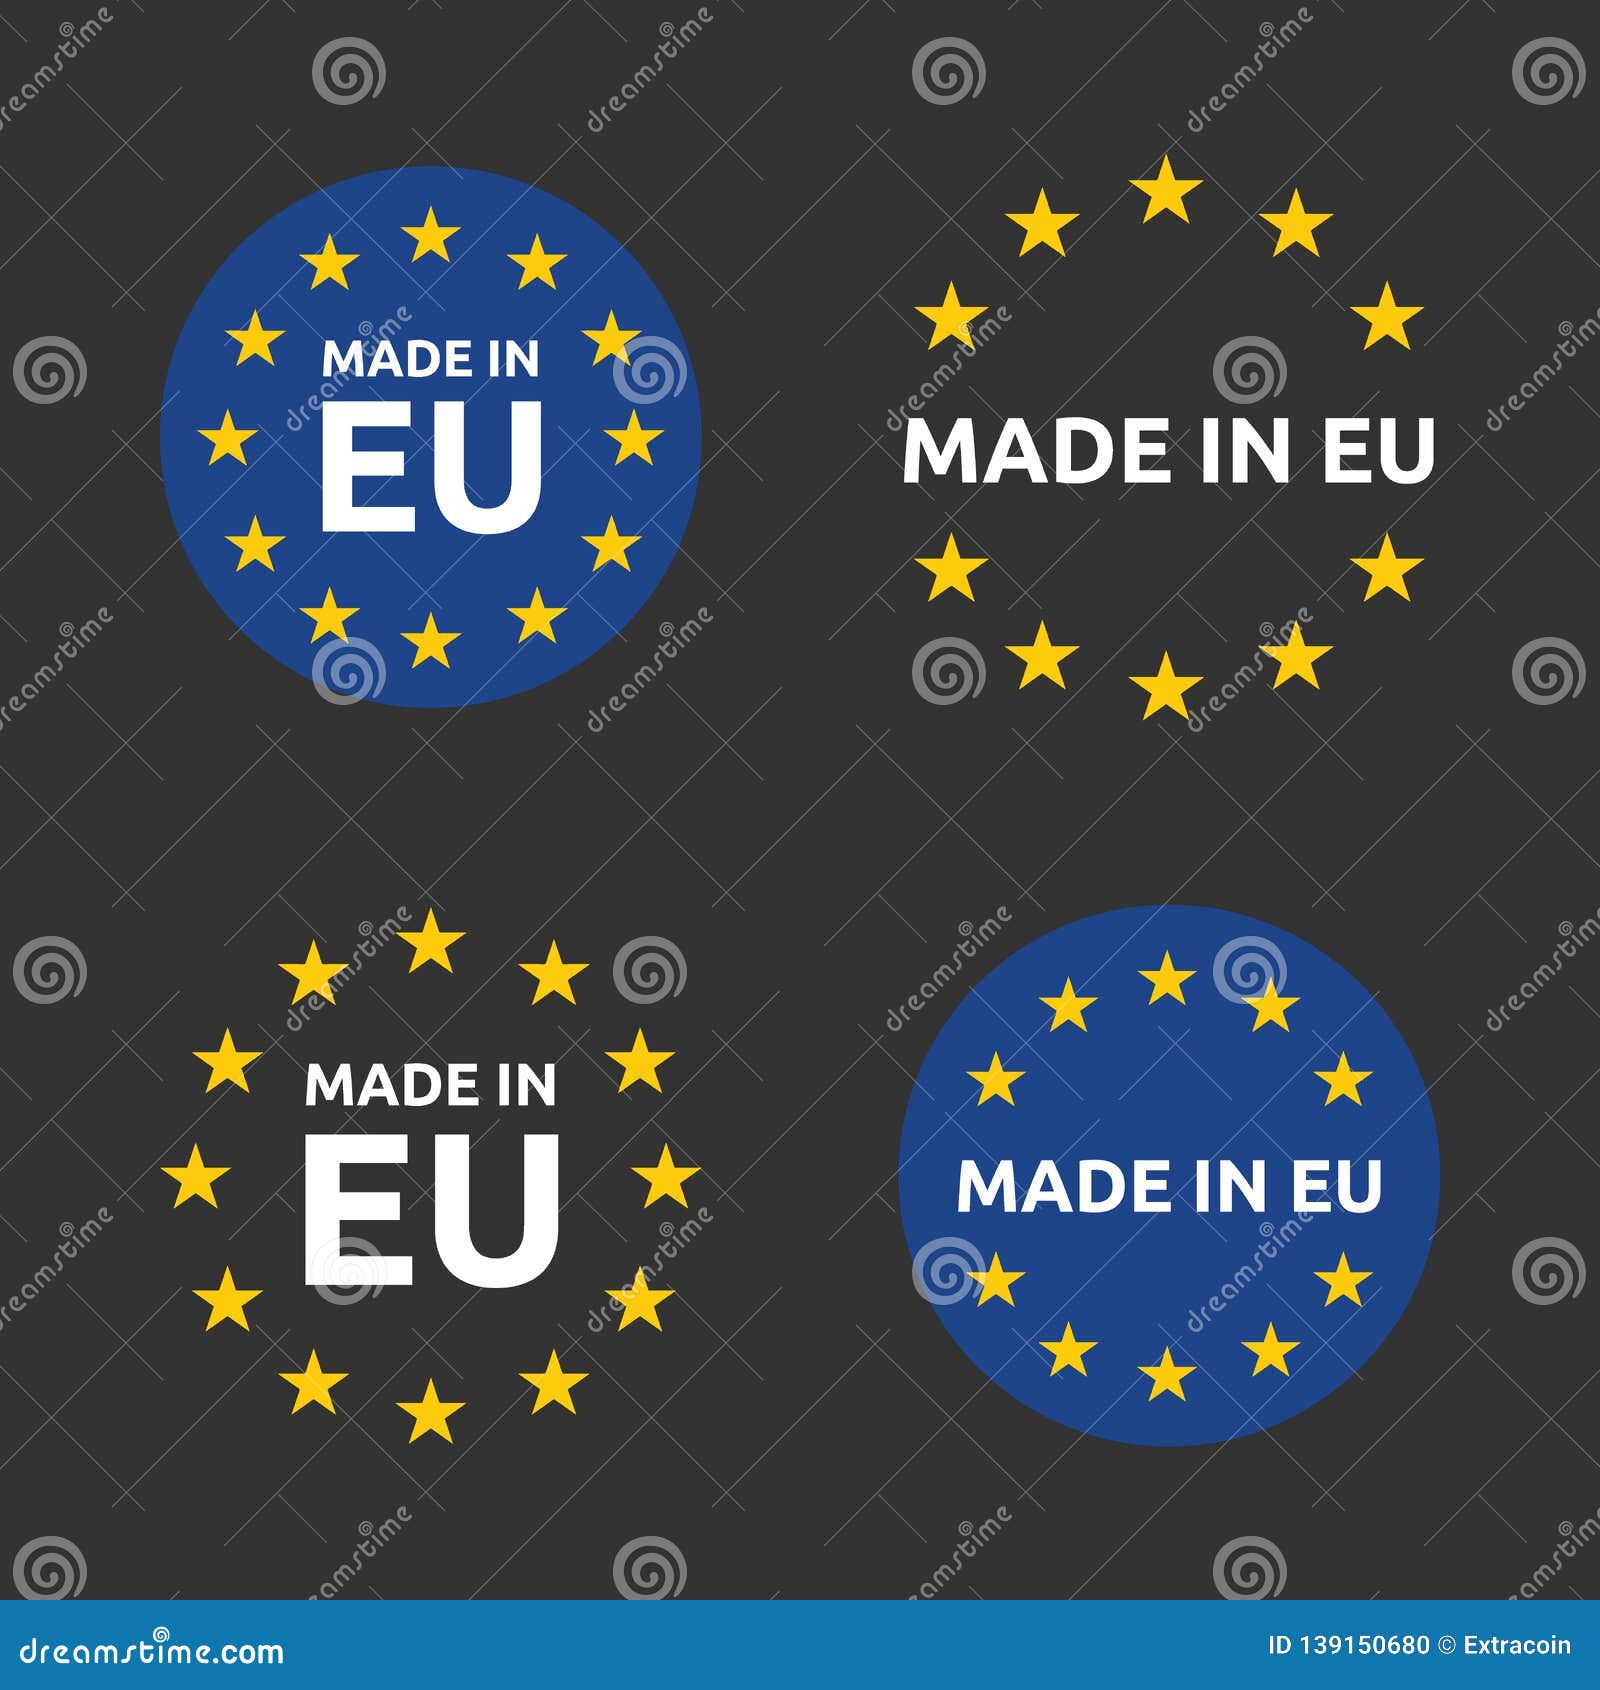 Eu product. Торговая марка в Евросоюзе. Сделано в Европе значок. Этикетка для Европы. Значок Евросоюза на этикетке.